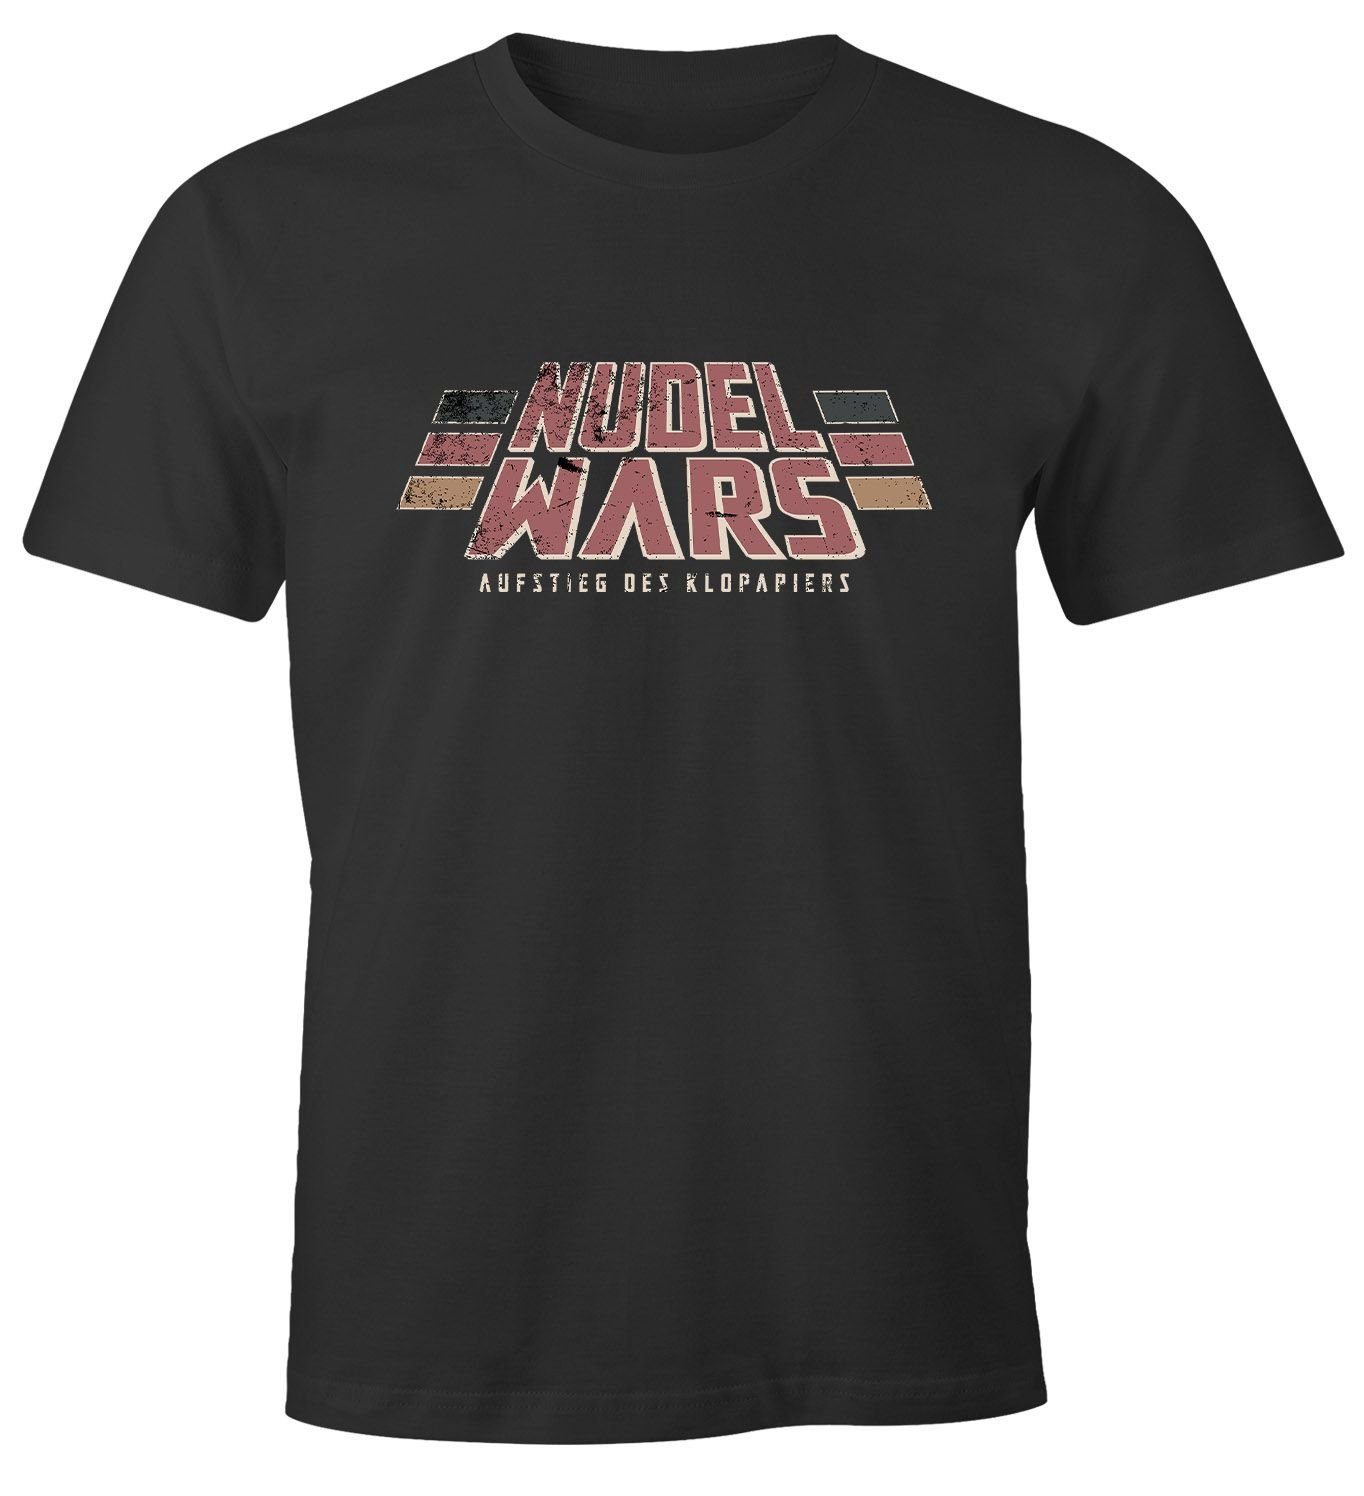 MoonWorks Print-Shirt Herren T-Shirt Nudel Wars Aufstieg des Klopapiers Sci Fi Parodie Hamstern Fun-Shirt Spruch lustig Moonworks® mit Print | T-Shirts